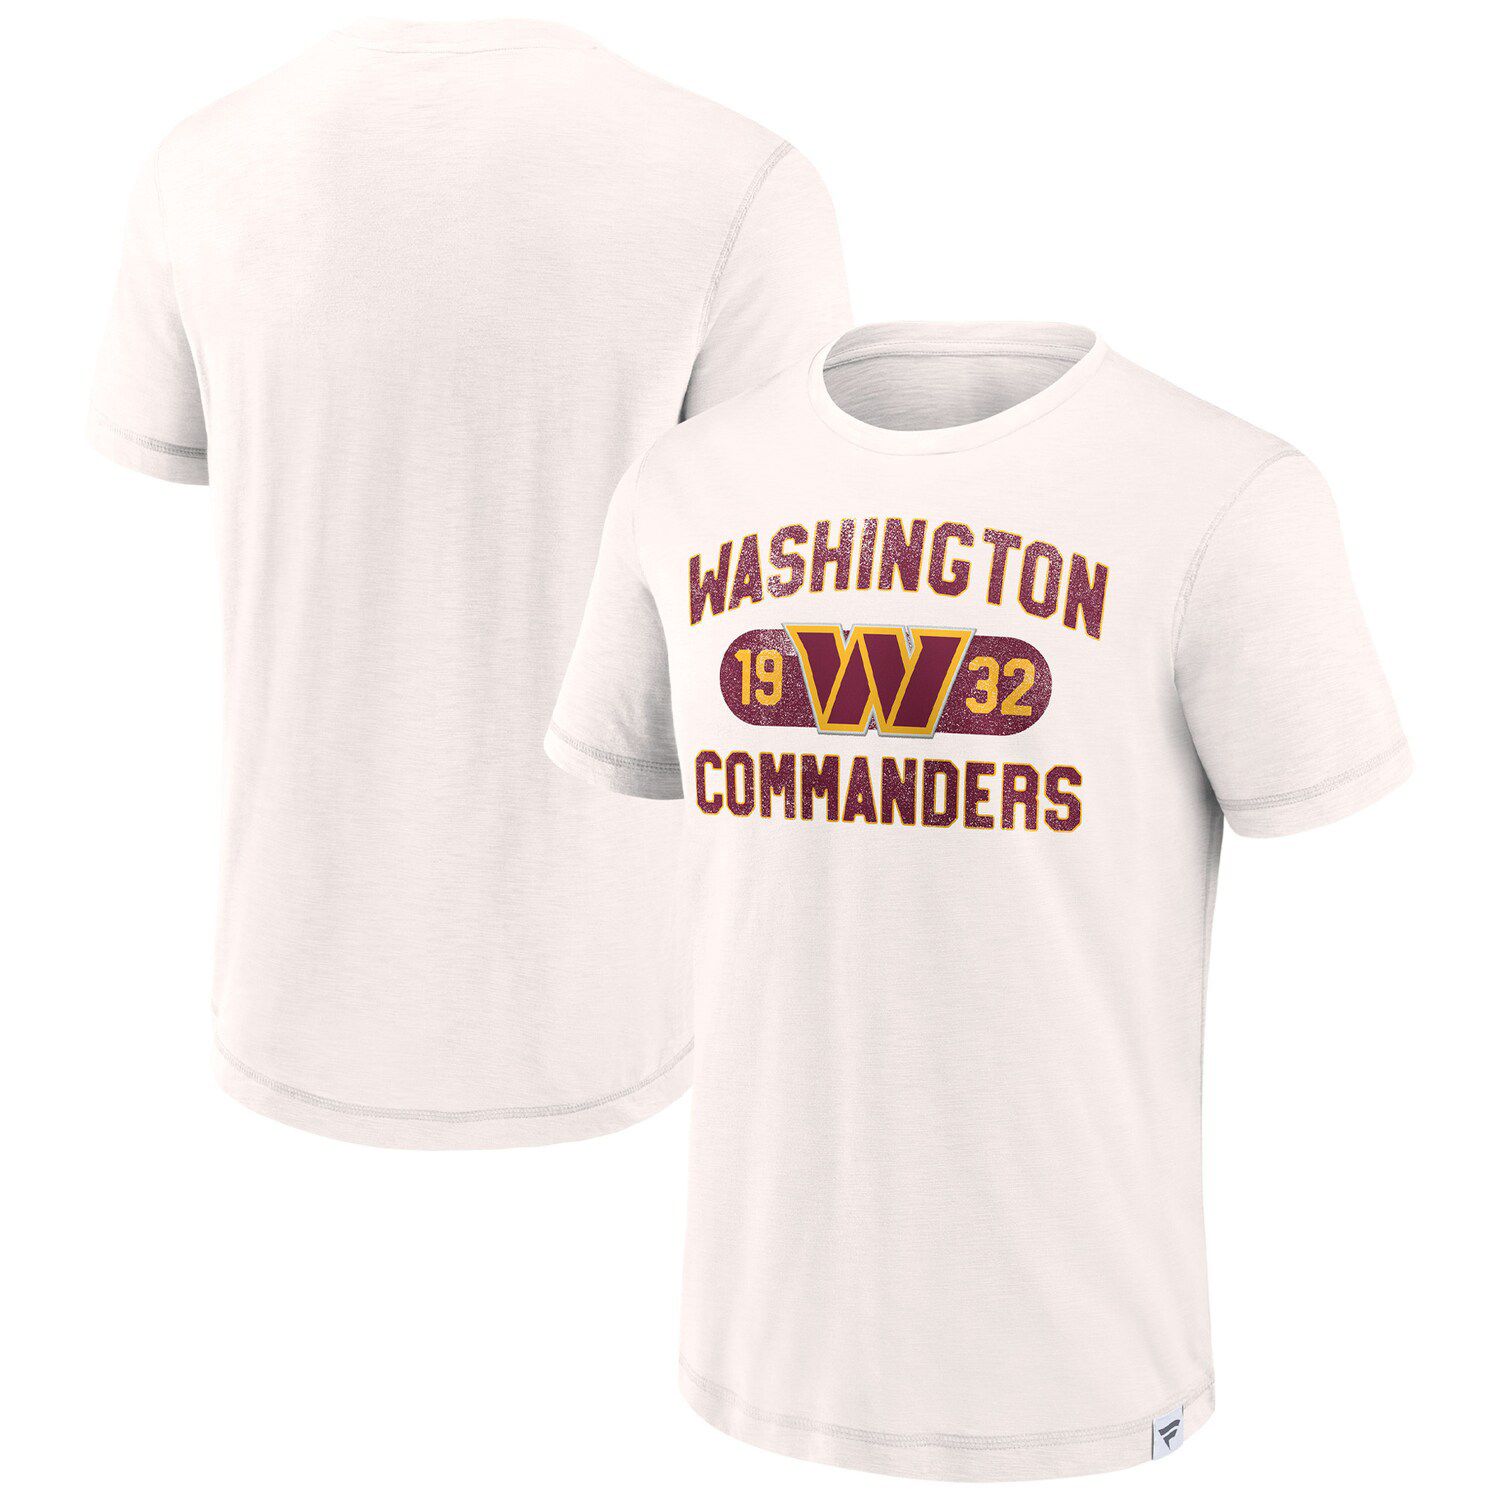 Мужская белая футболка с логотипом Washington Commanders Act Fast Fast Fanatics цена и фото